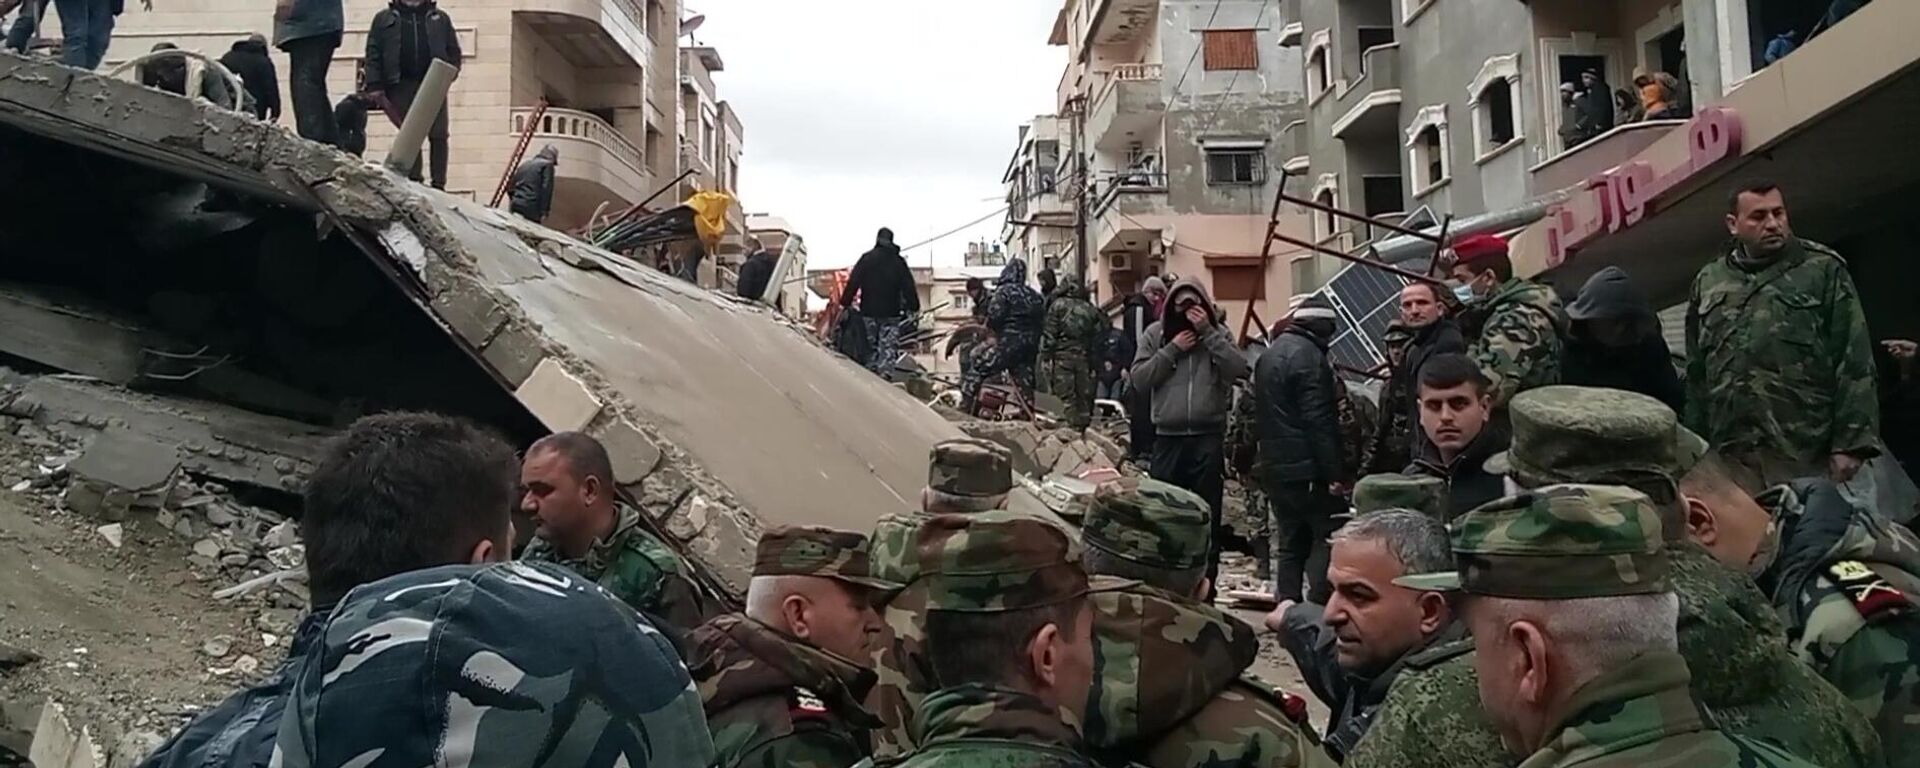 Des soldats russes aident les Syriens à sauver les survivants et à déblayer les décombres après le séisme du 6 février 2023 - Sputnik Afrique, 1920, 07.02.2023